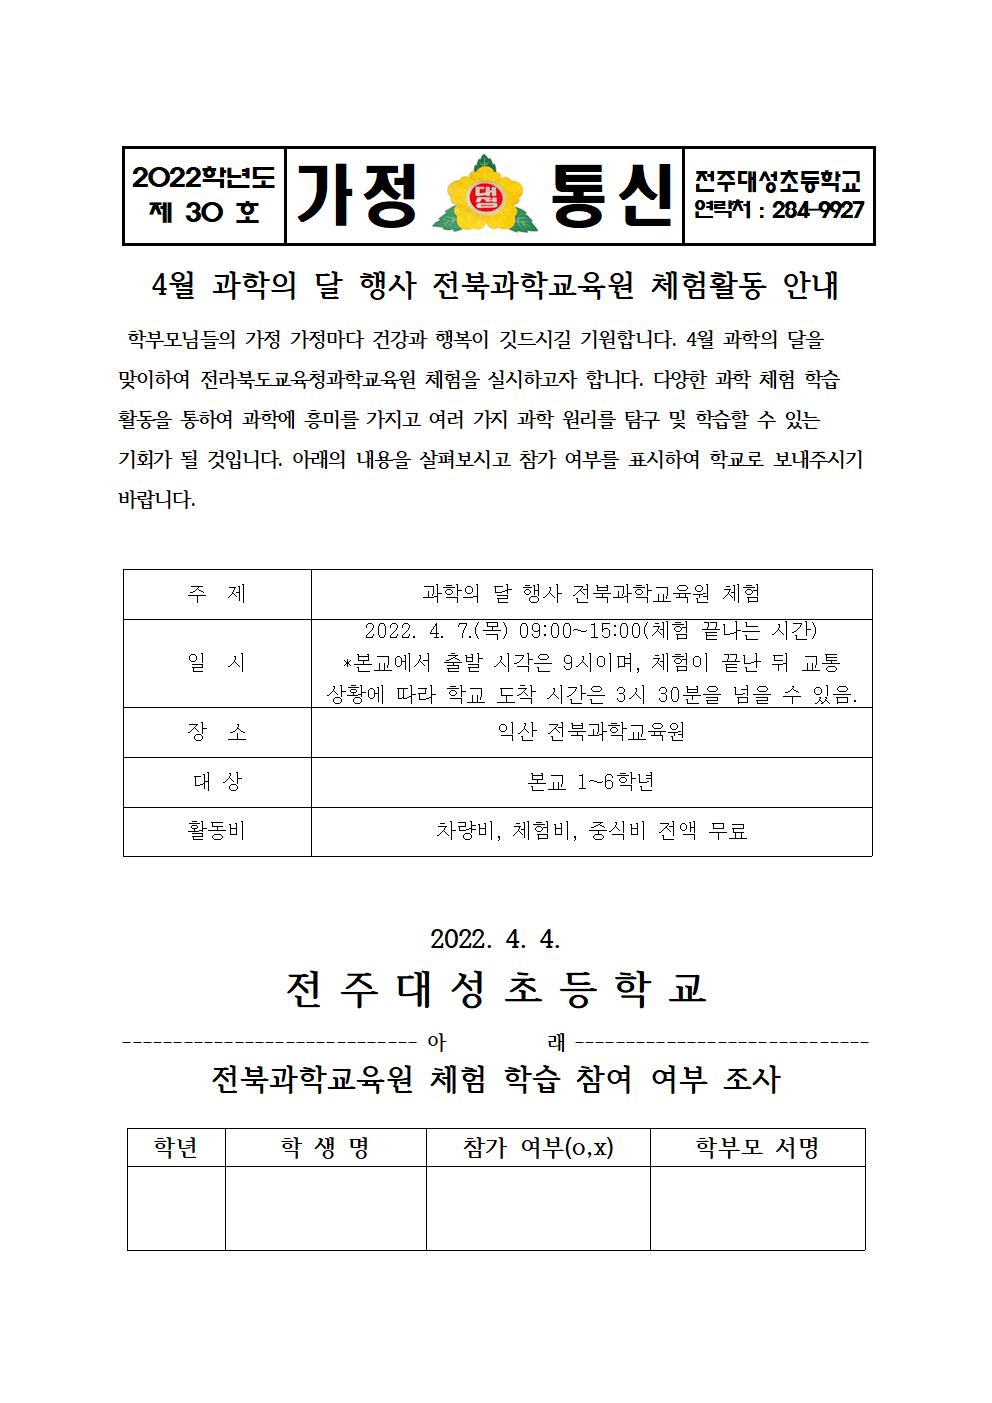 제30호-과학의 달 전북과학교육원 체험활동 신청서001